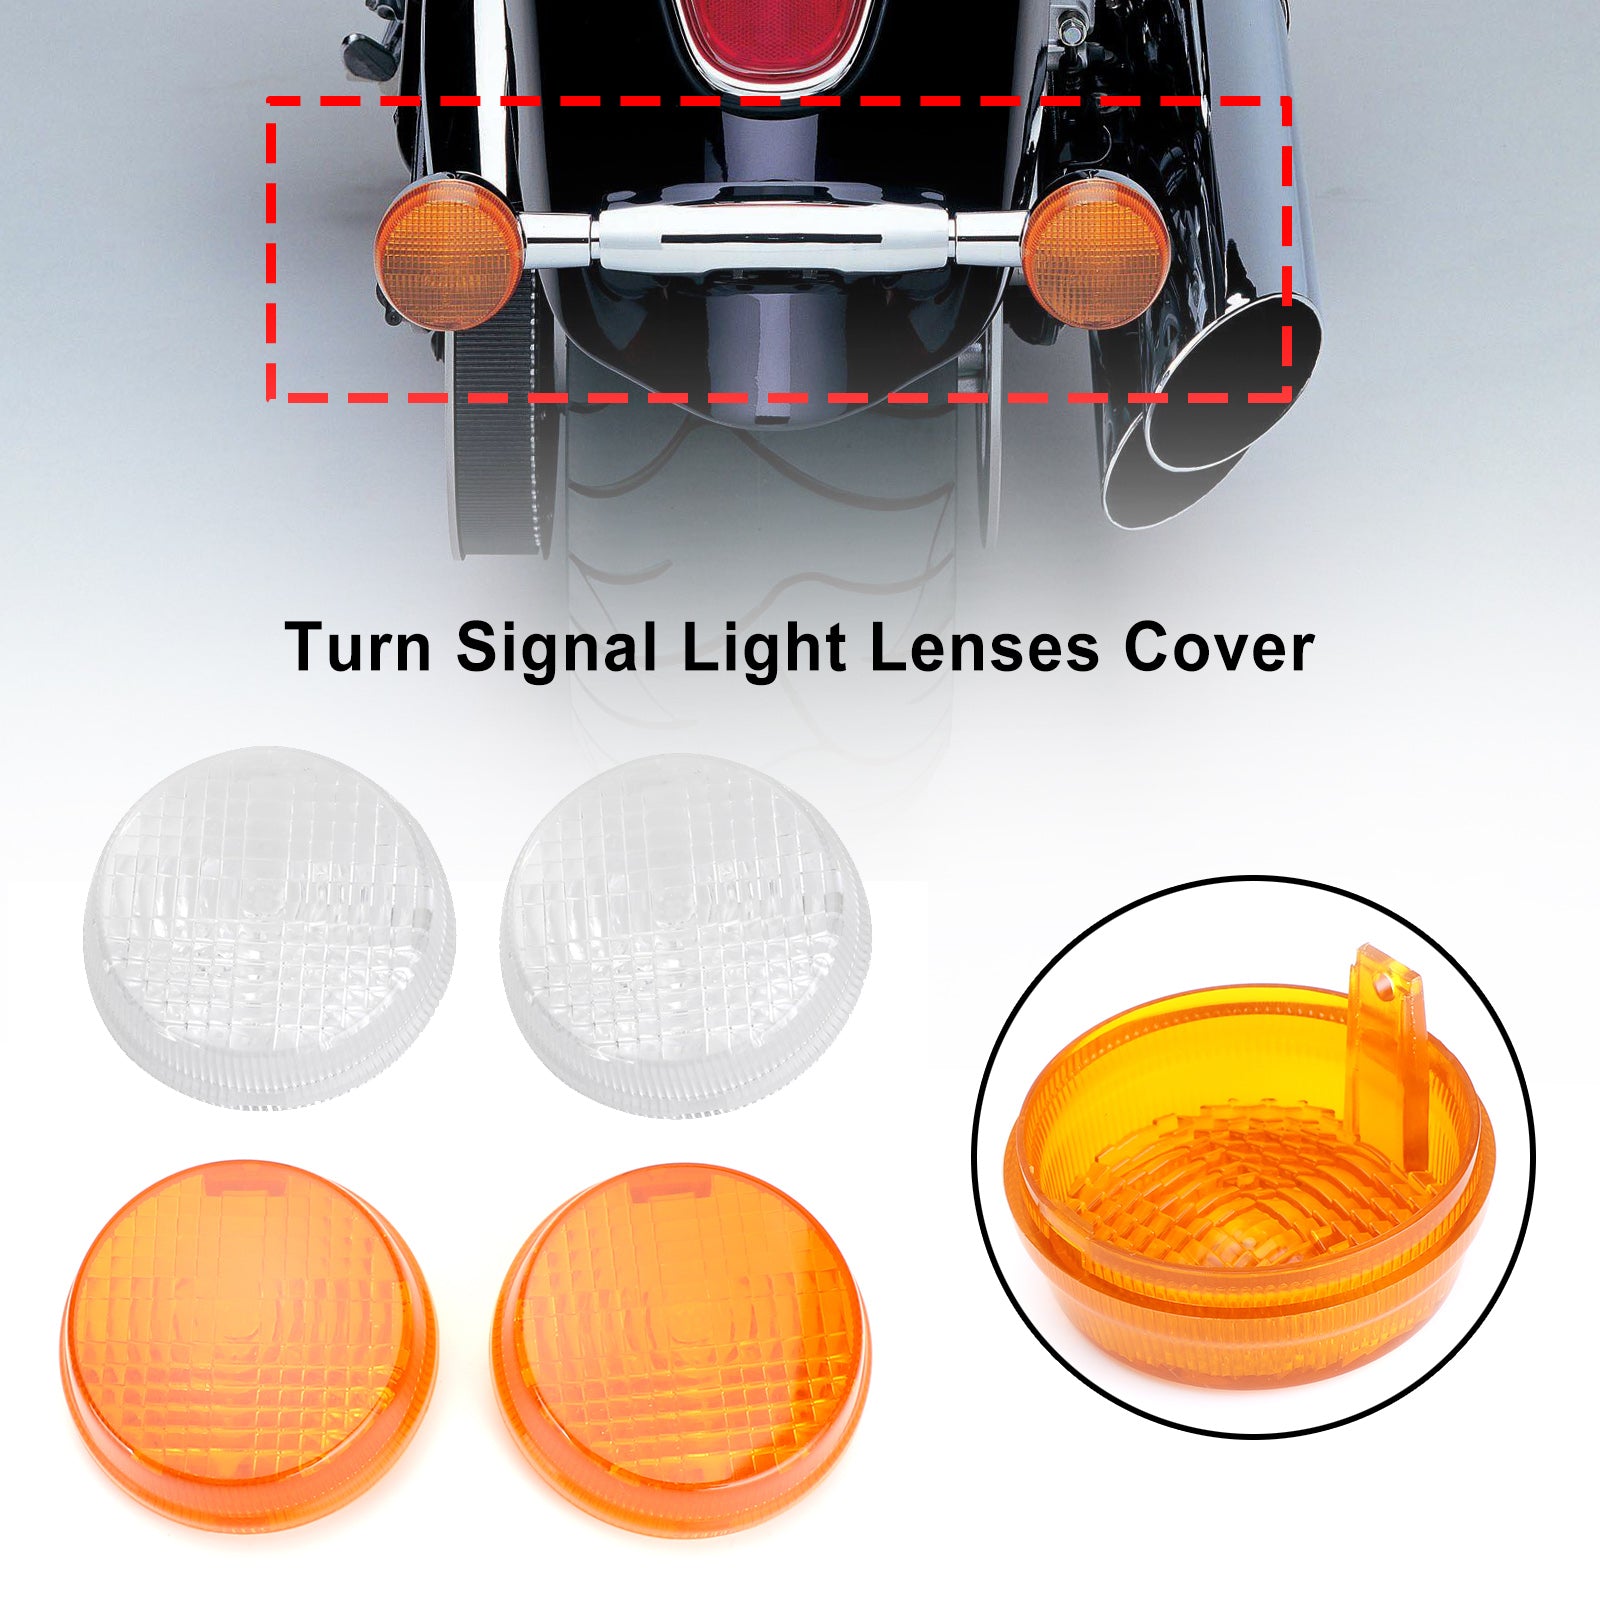 Turn Signal Light Lenses Cover For Honda Shadow Spirit VT750 Vulcan VN Generic